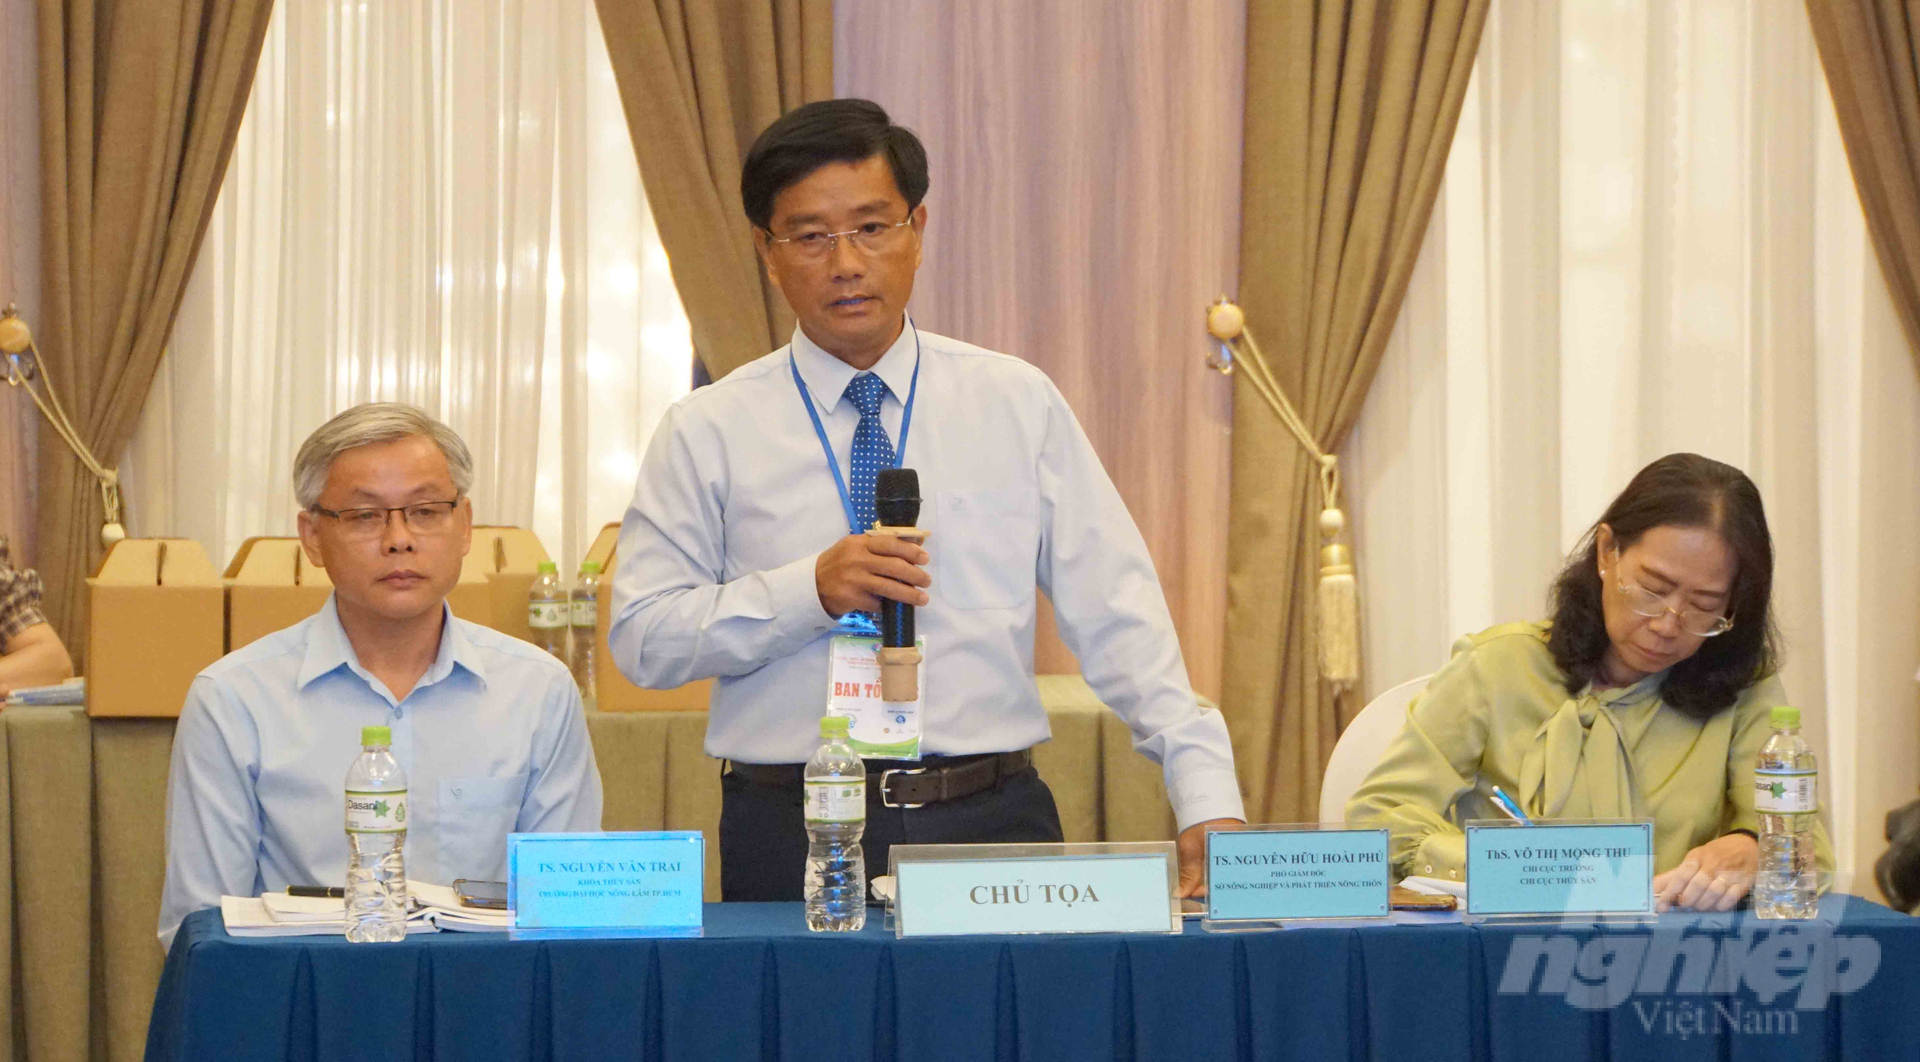 Tiến sĩ Nguyễn Hữu Hoài Phú, Phó Giám đốc Sở NN-PTNT TP.HCM (đứng) phát biểu chỉ đạo tại hội thảo. Ảnh: Lê Bình.